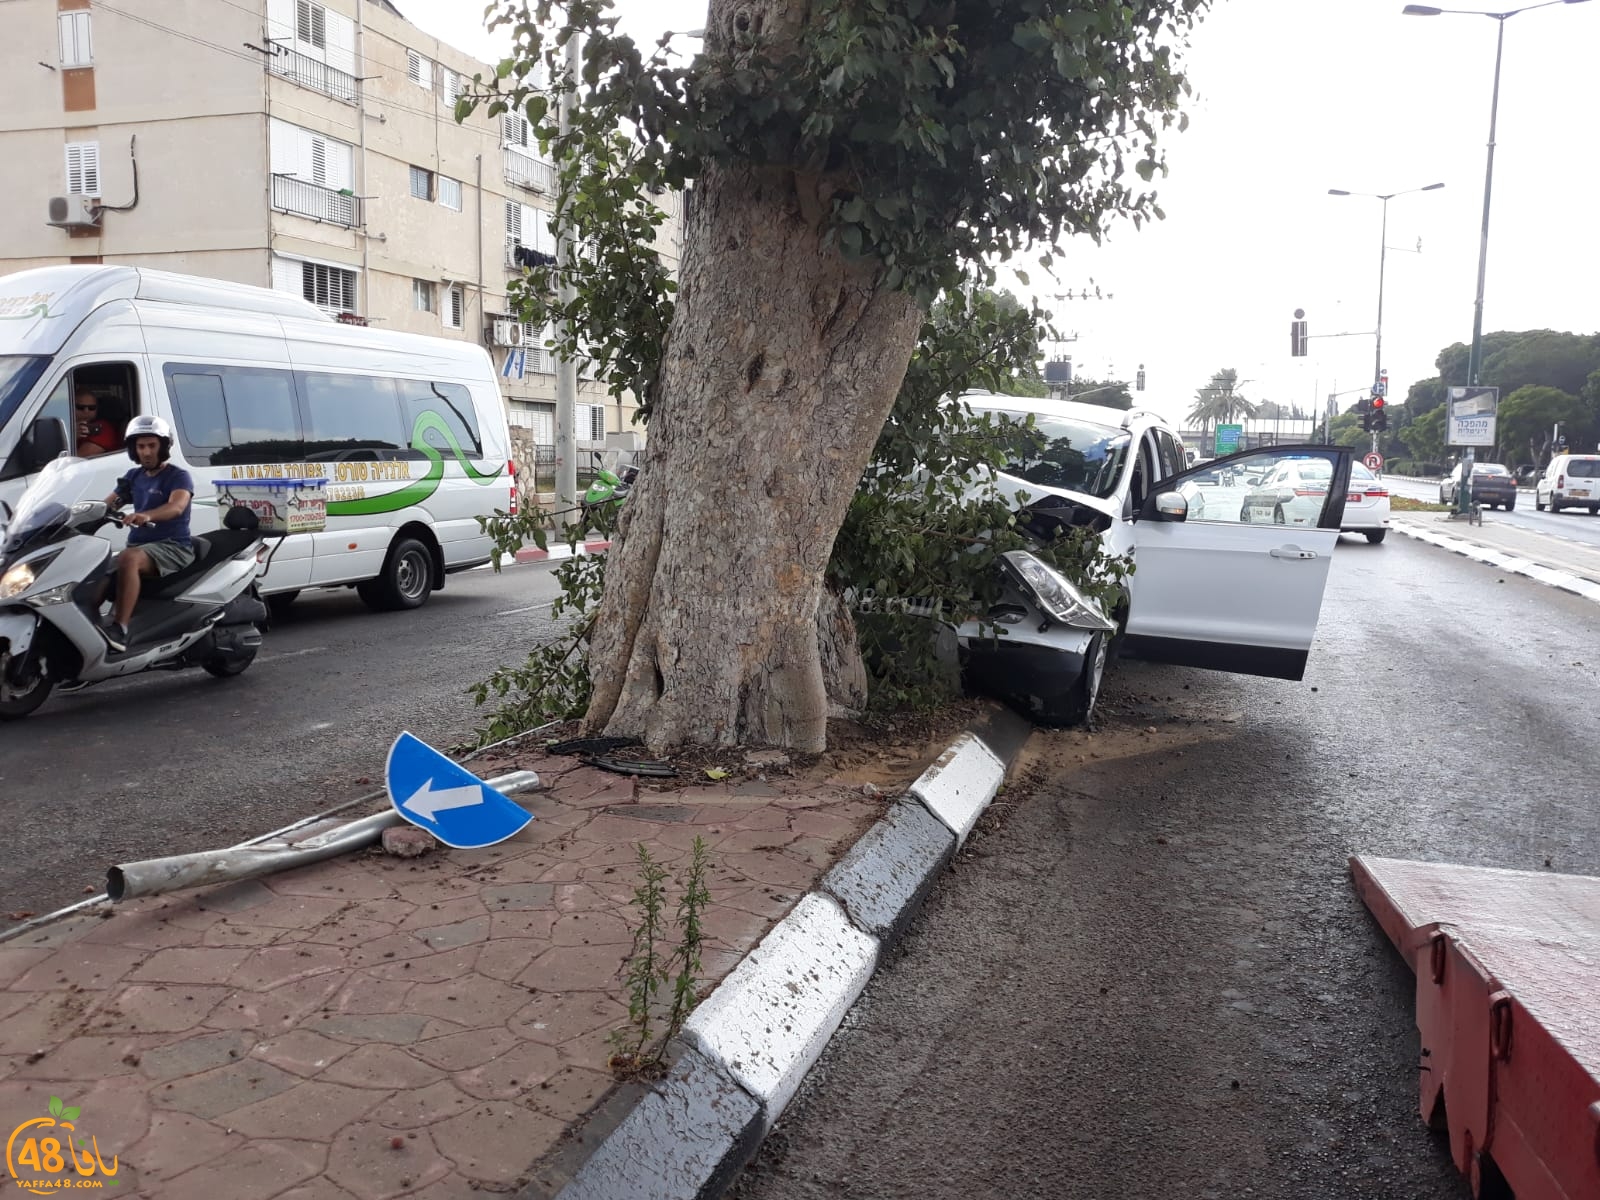  صور: اصابة طفيفة بحادث طرق ذاتي شرق مدينة يافا 